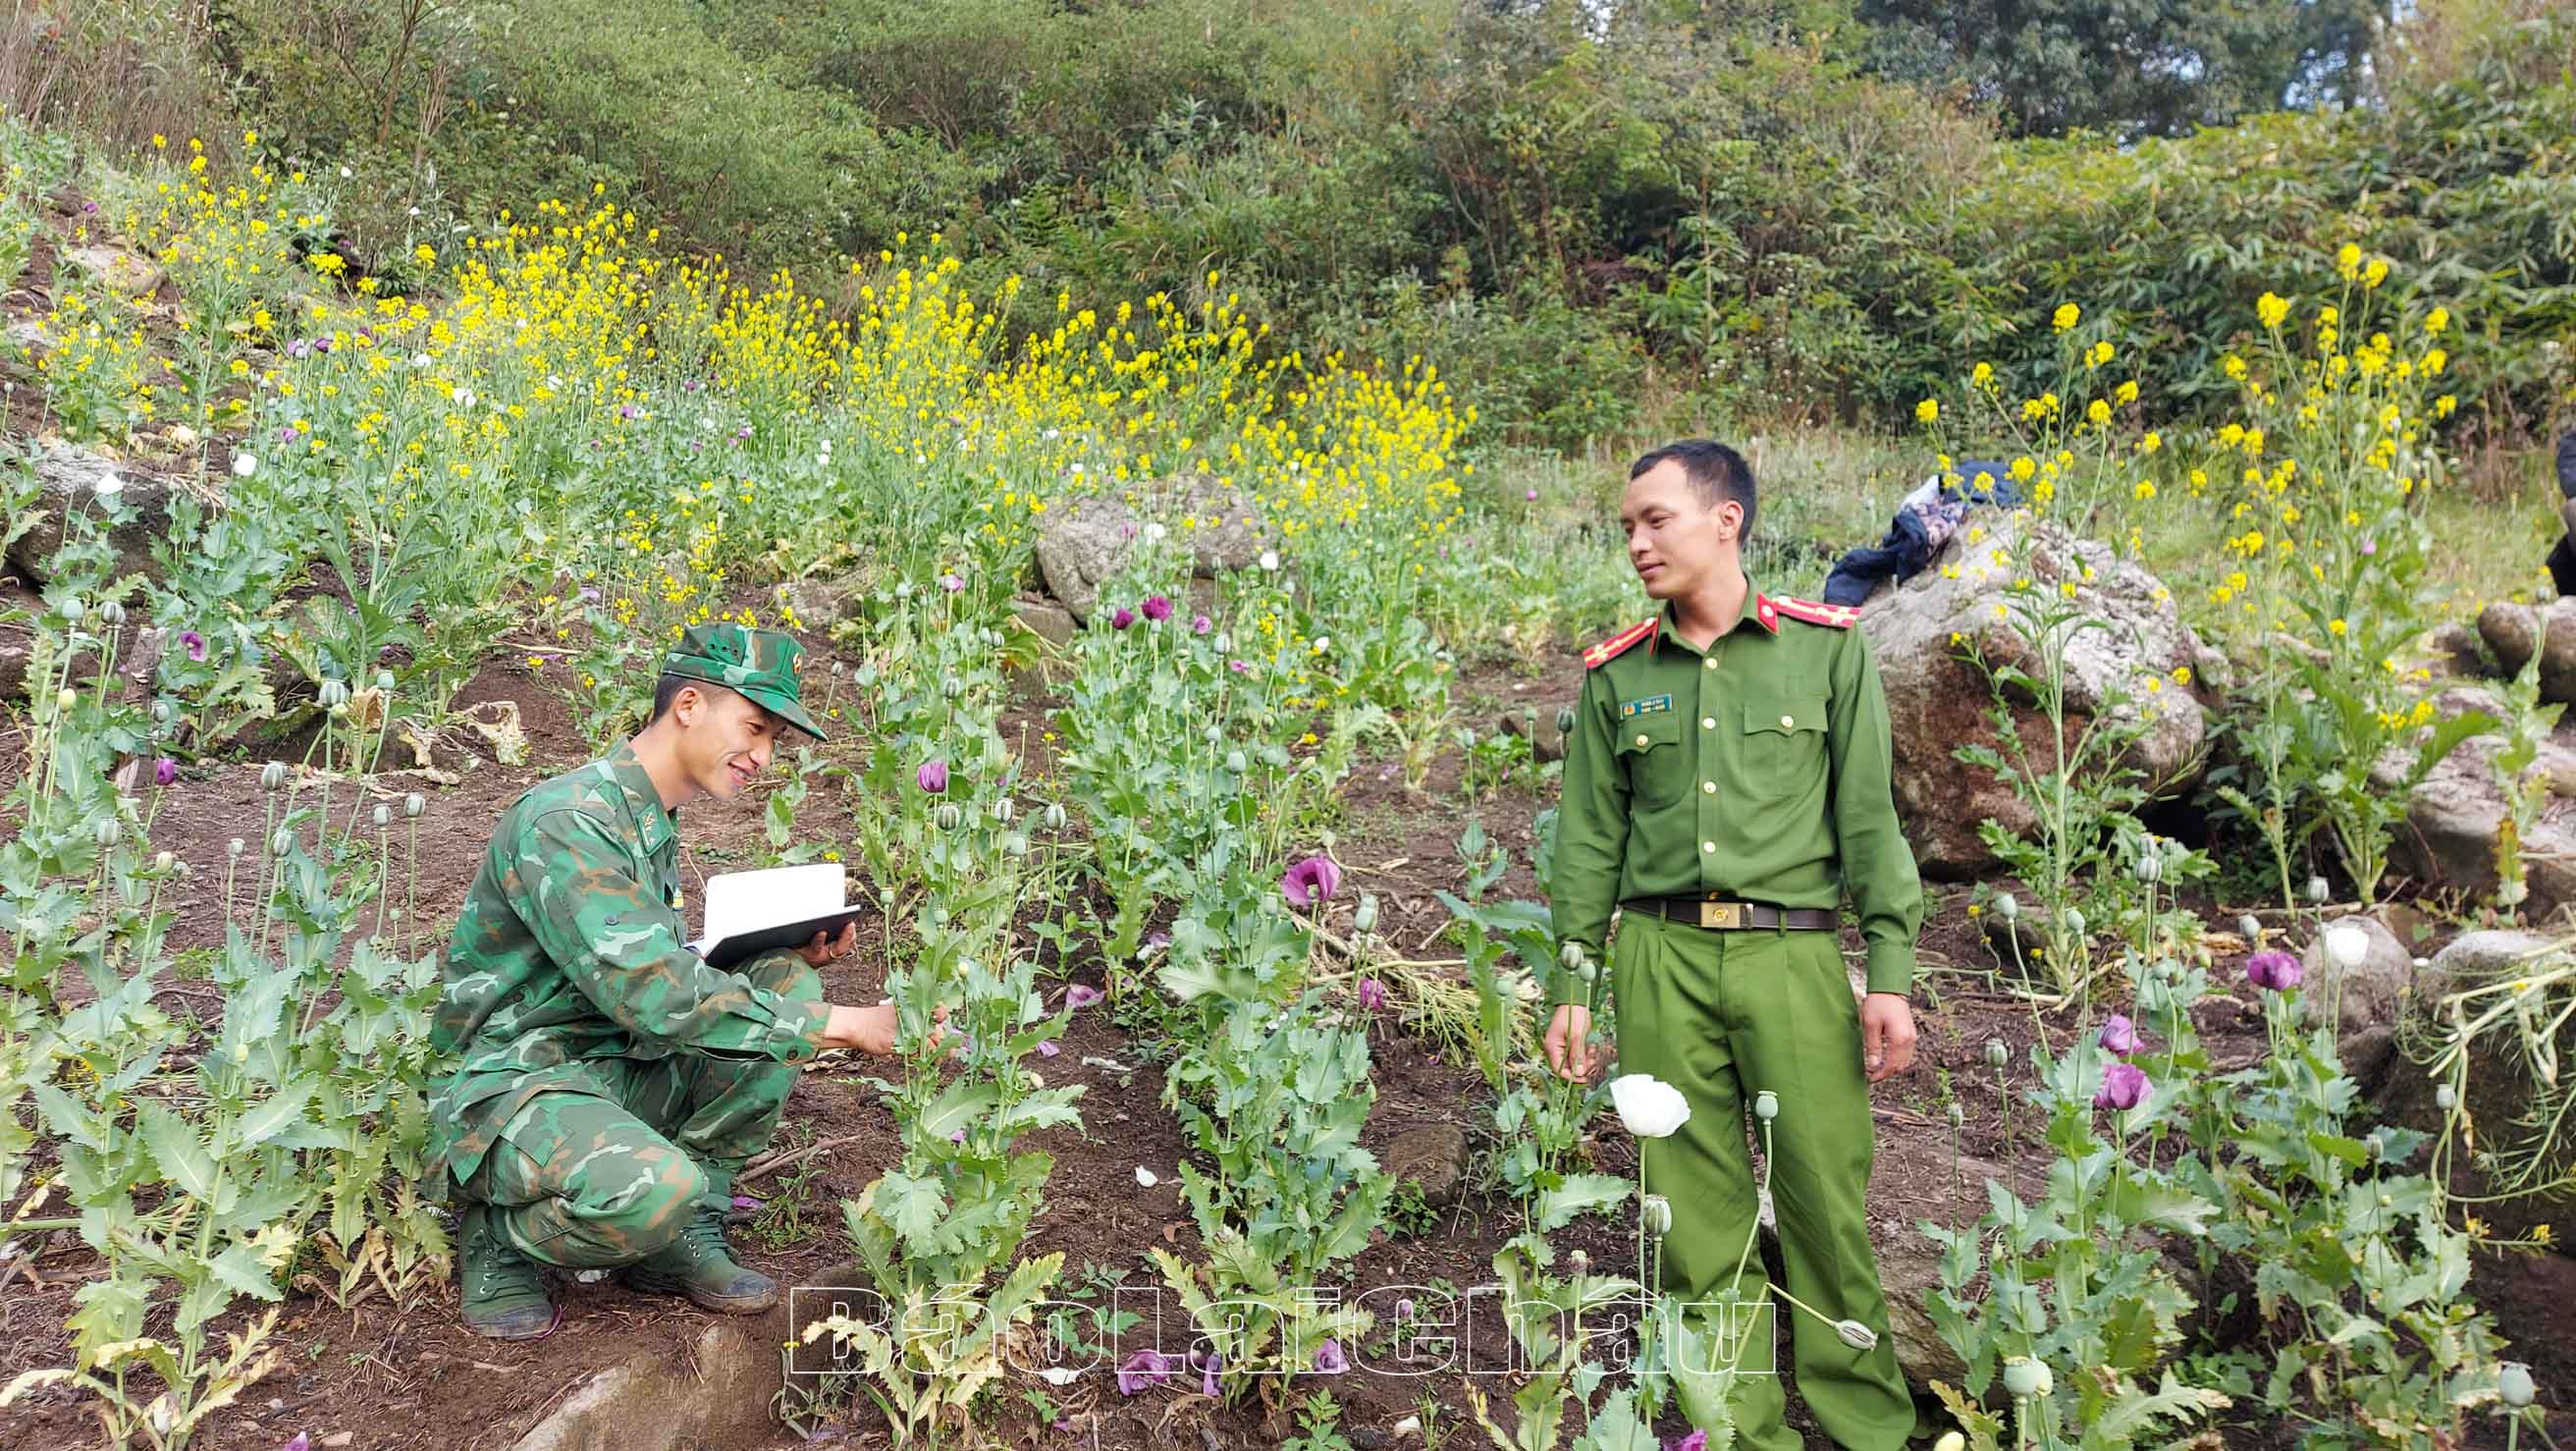 Lực lượng Công an huyện Phong Thổ, Đồn Biên phòng Dào San kiểm đếm số lượng cây, đo diện tích vườn trồng cây thuốc phiện.